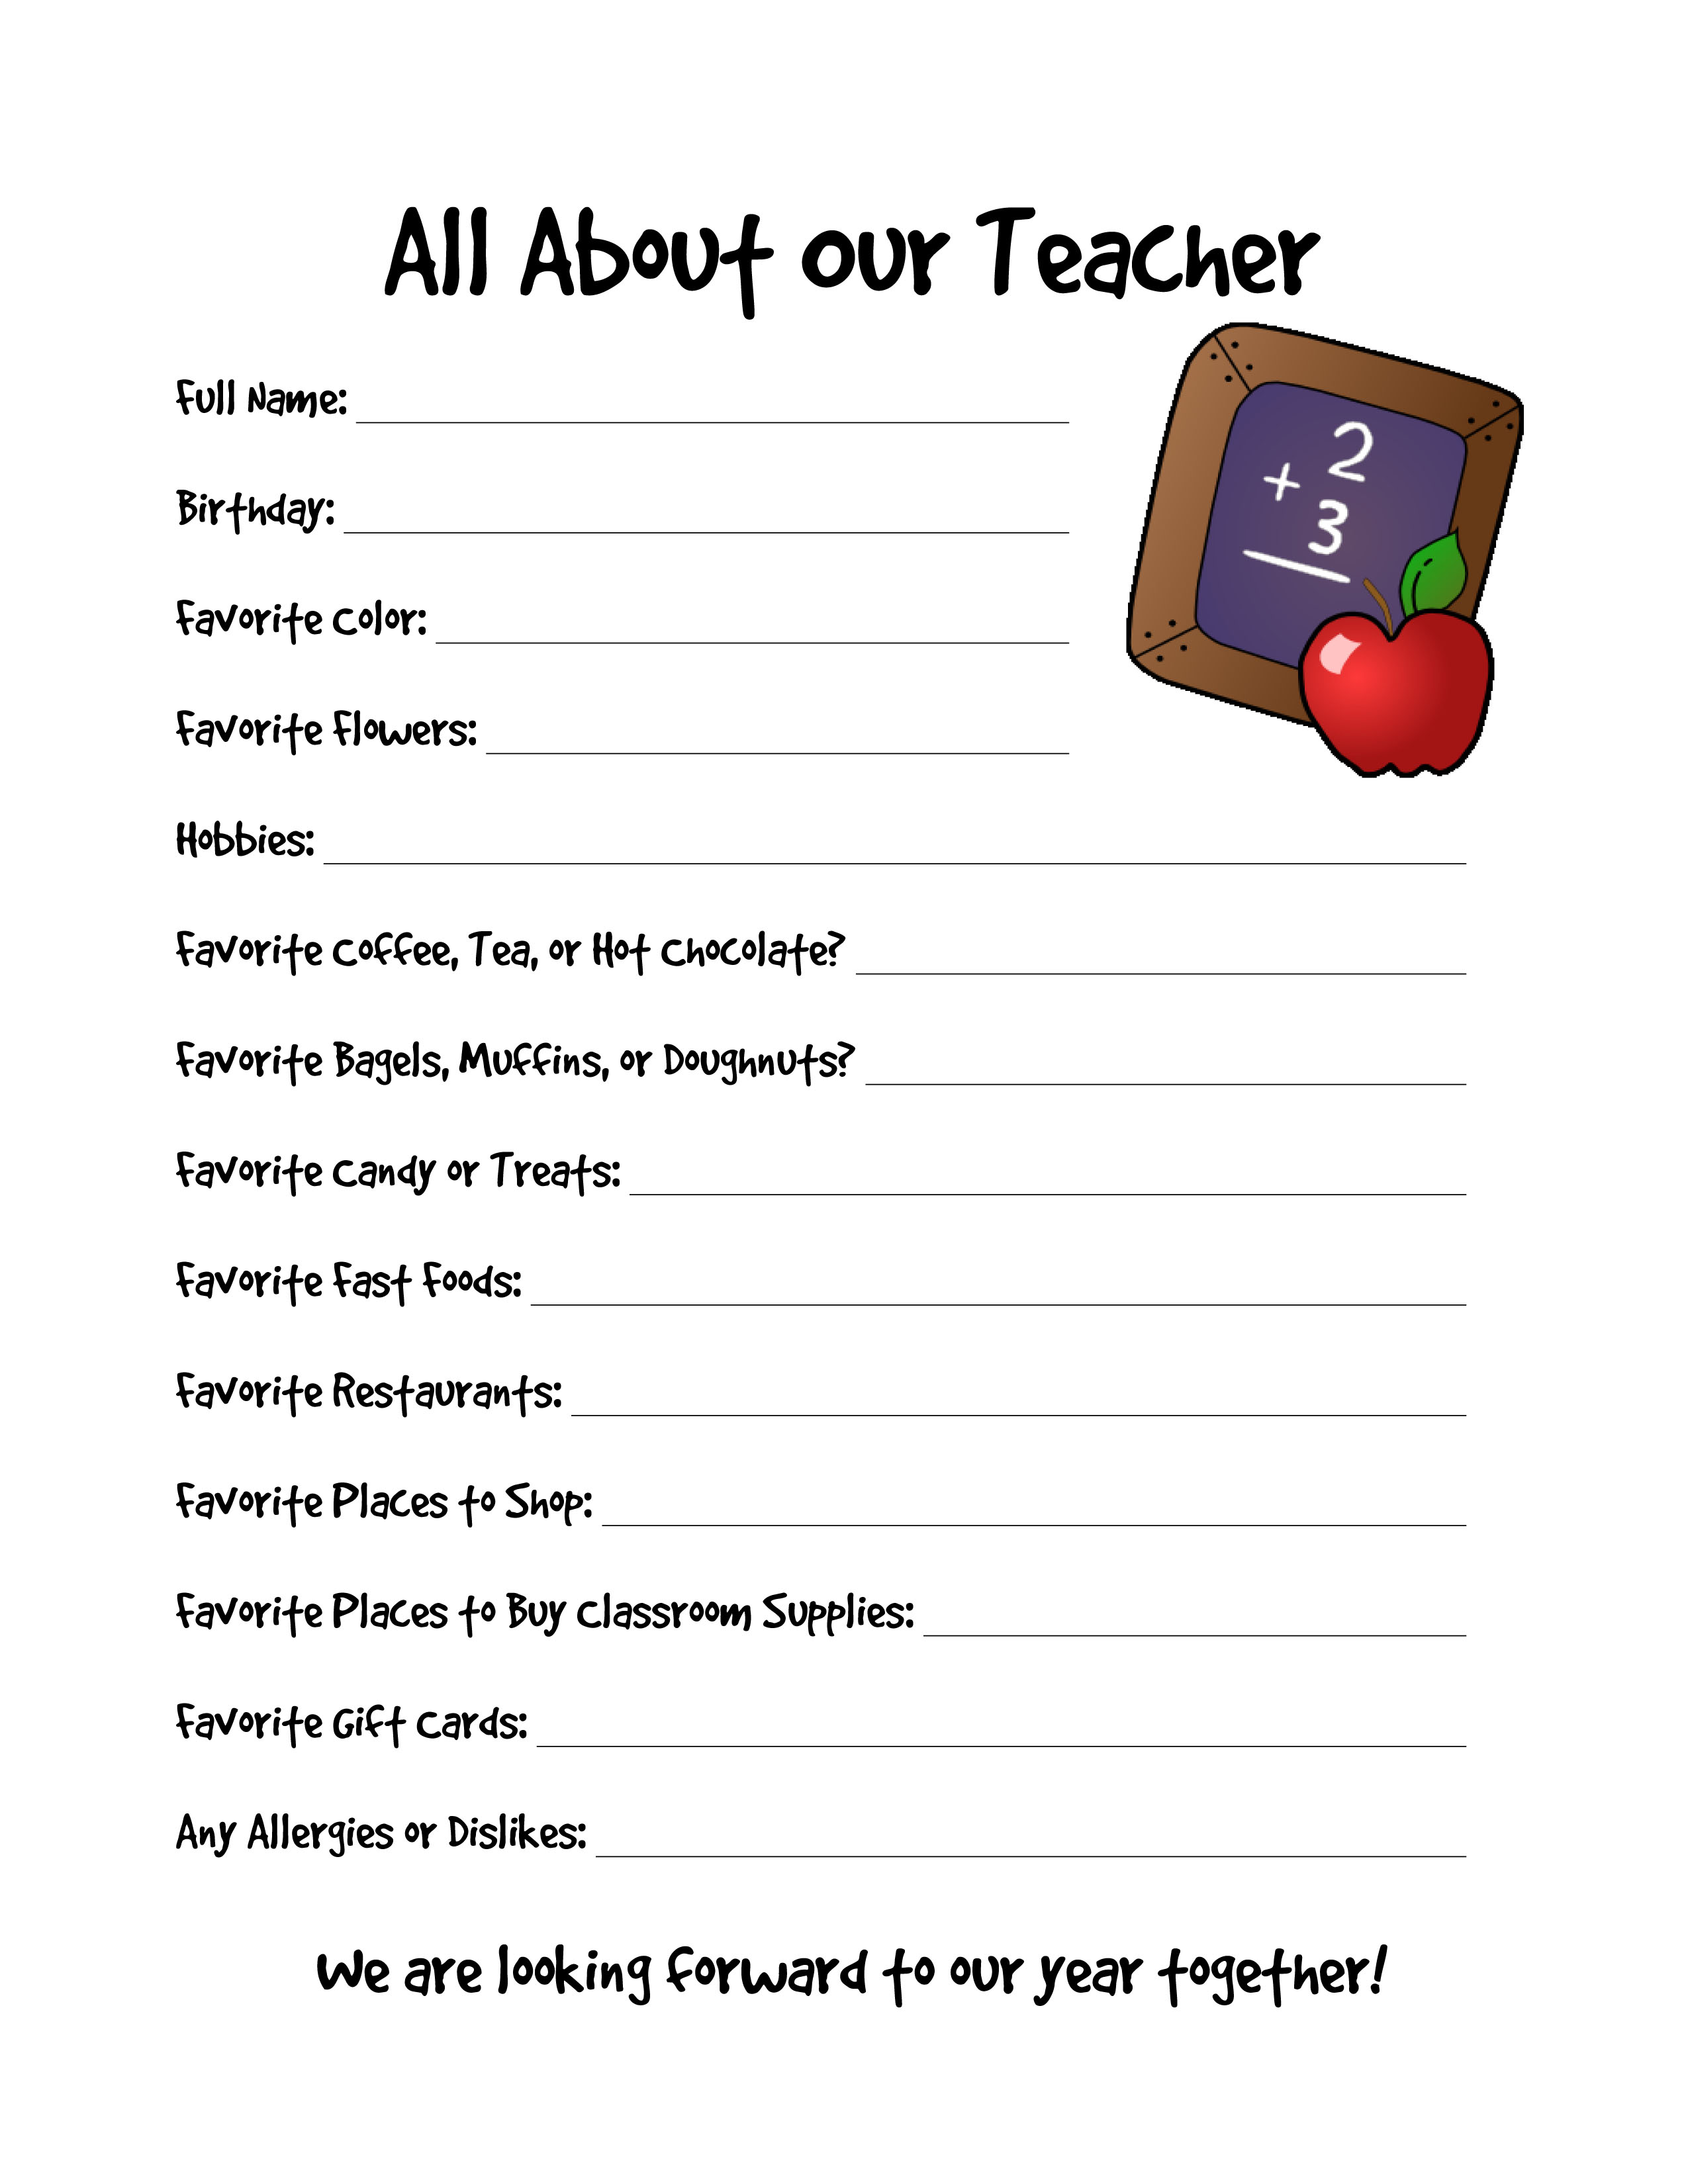 CH Teacher Survey 1